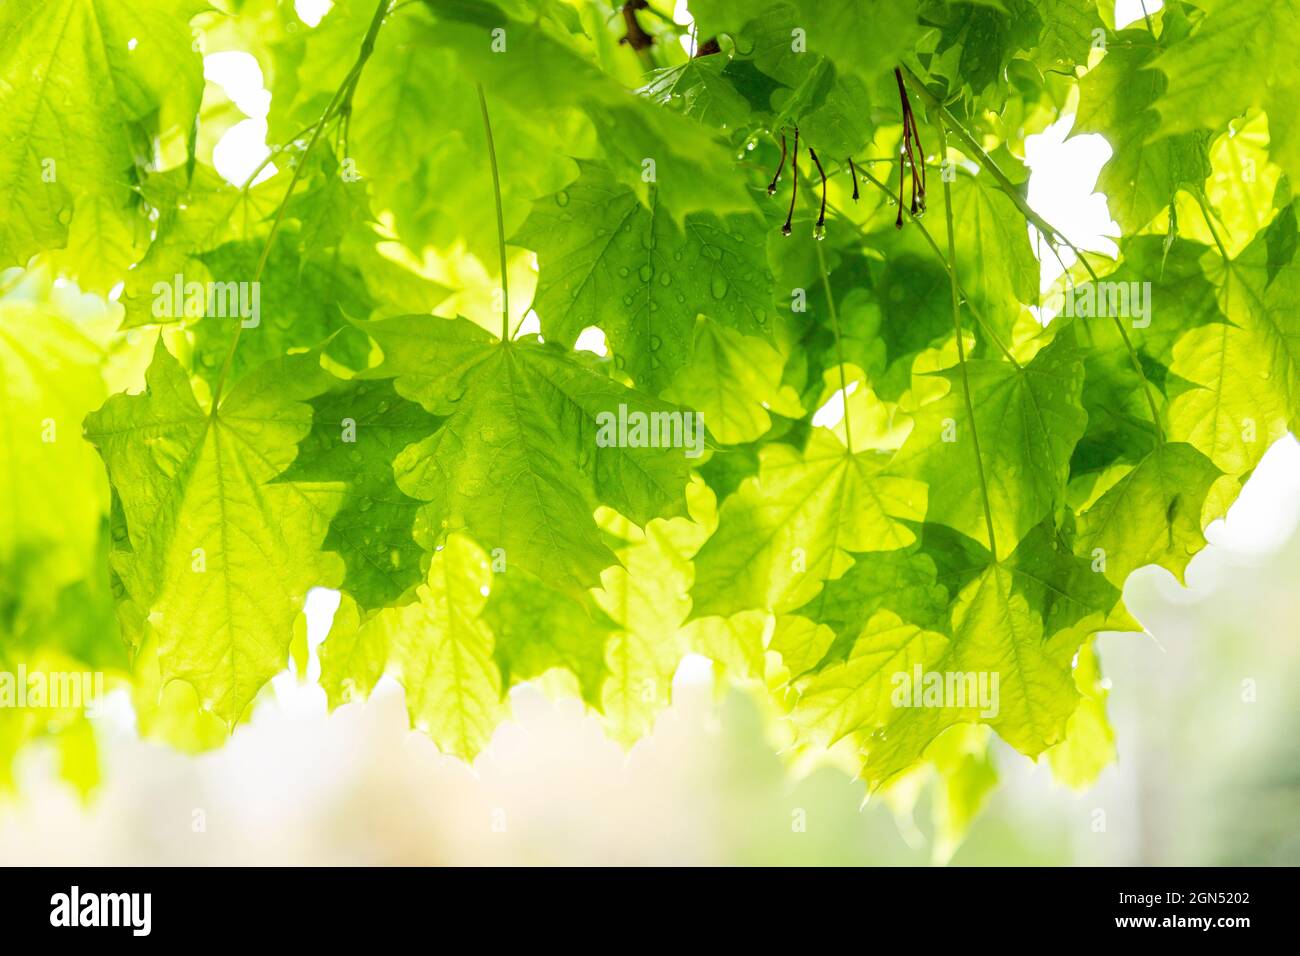 Grüne Ahornblätter im Frühlingsregen Hintergrund. Hintergrundbeleuchtetes grünes Ahornholz mit Regentropfen nach einer Frühlingsdusche. Stockfoto